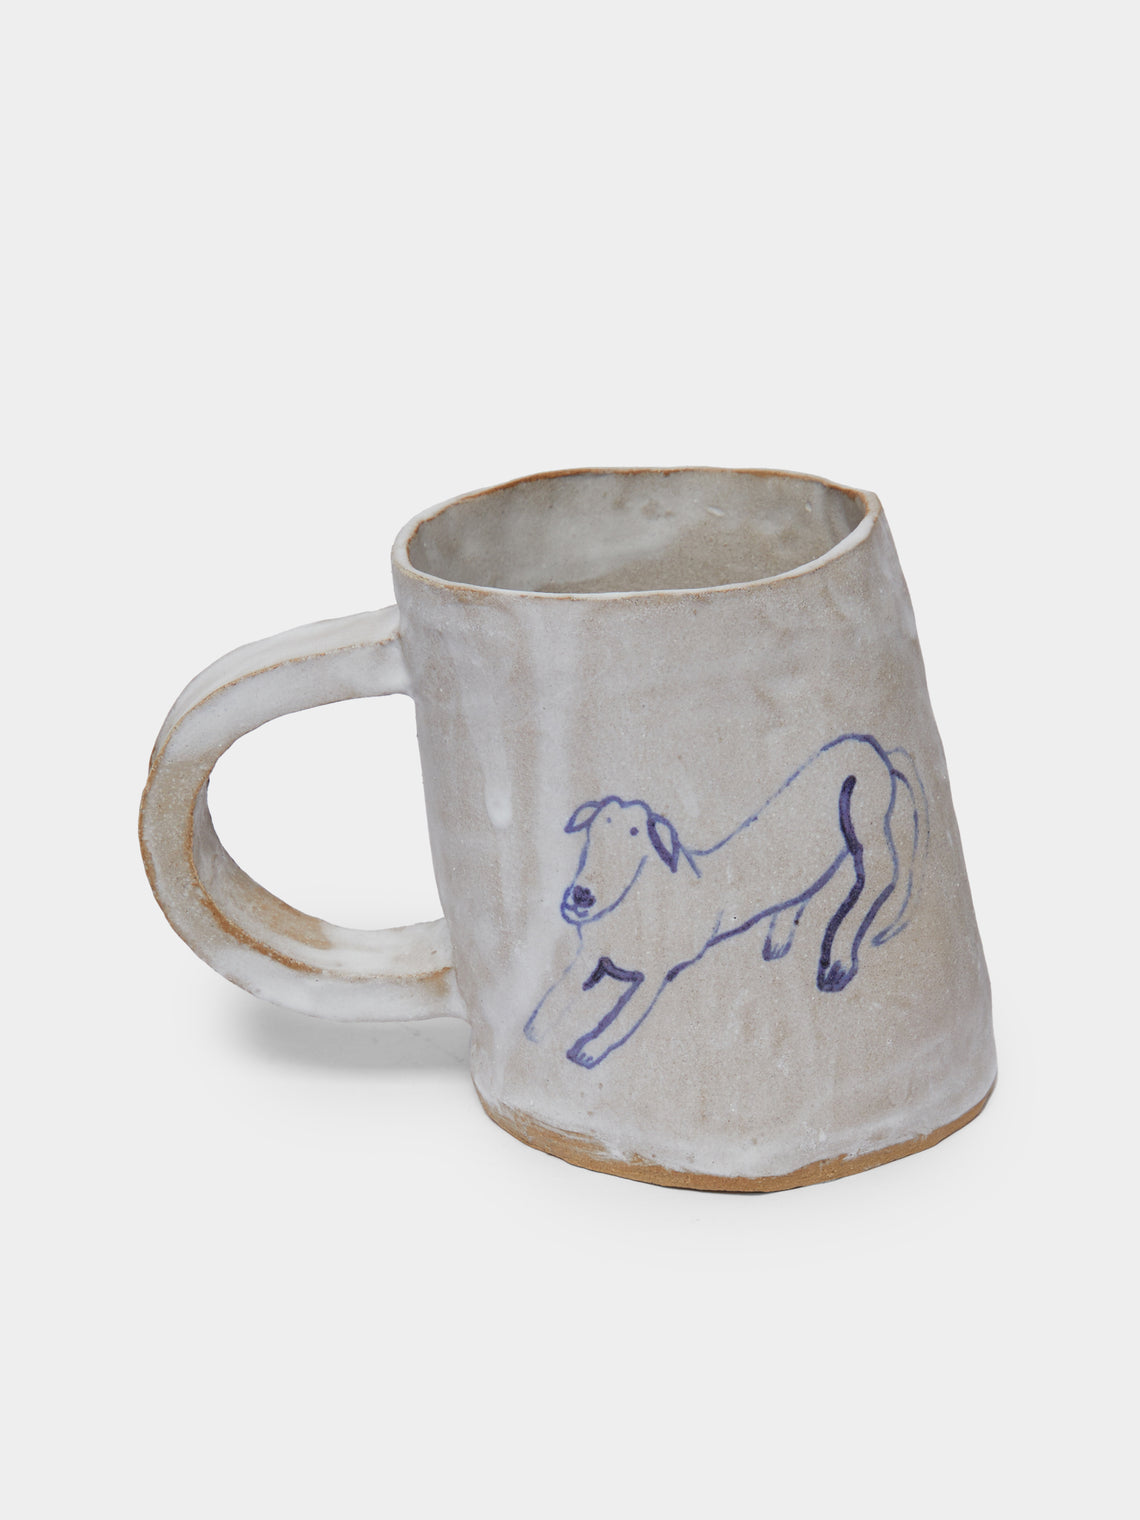 Liz Rowland - Dog Hand-Painted Ceramic Mug -  - ABASK - 